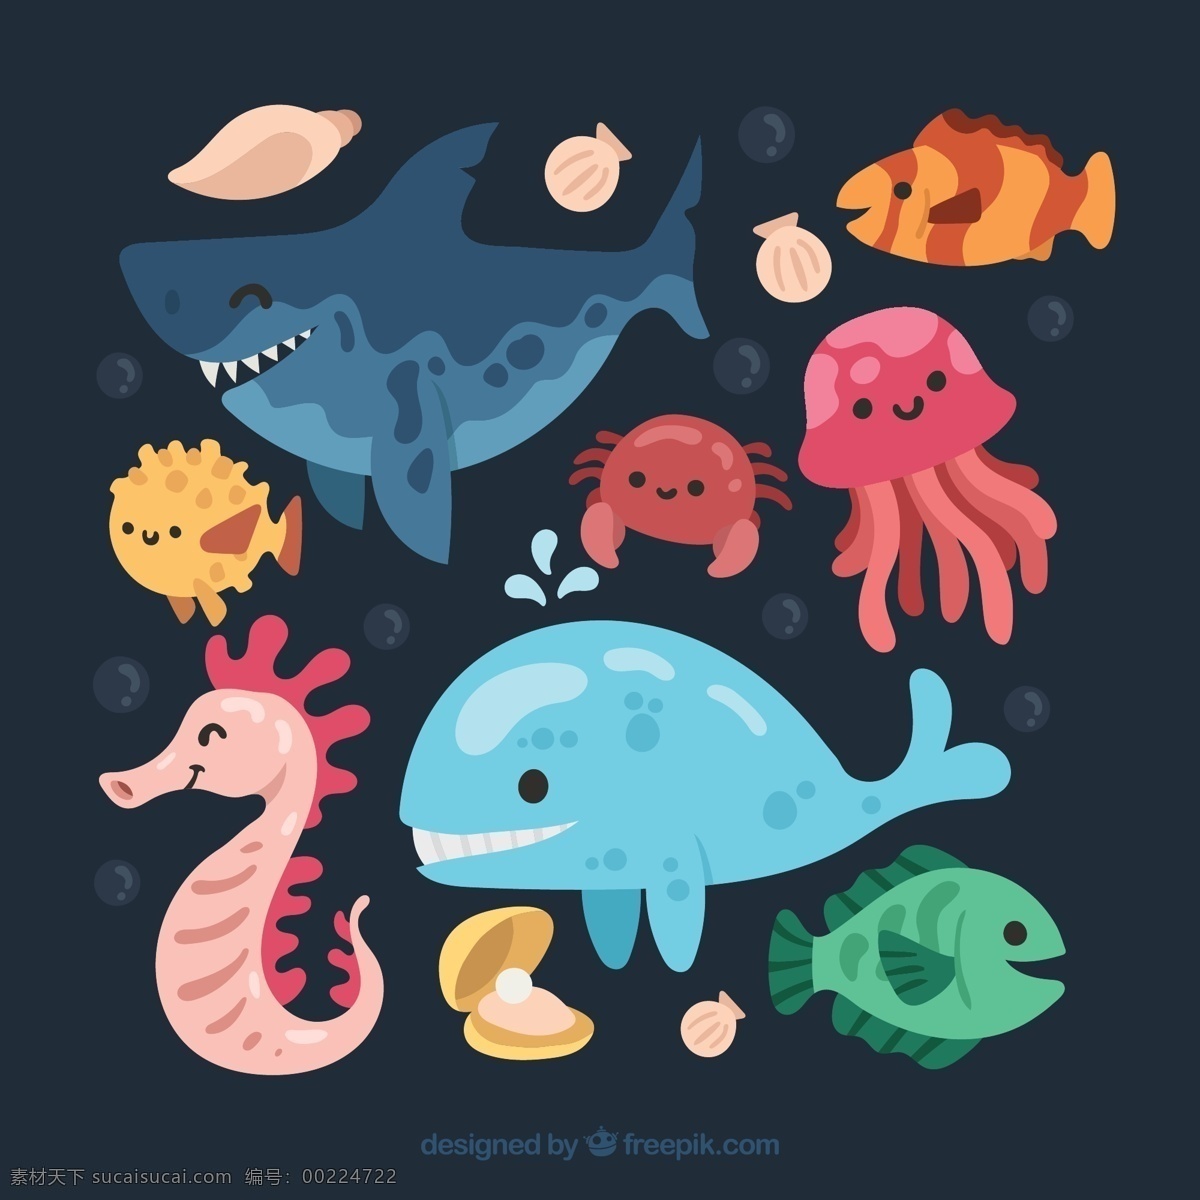 款 卡通 海洋 动物 矢量 鲨鱼 鲸鱼 热带鱼 河豚 螃蟹 贝壳 珍珠 水母 海马 海螺 气泡 海洋动物 文化艺术 绘画书法